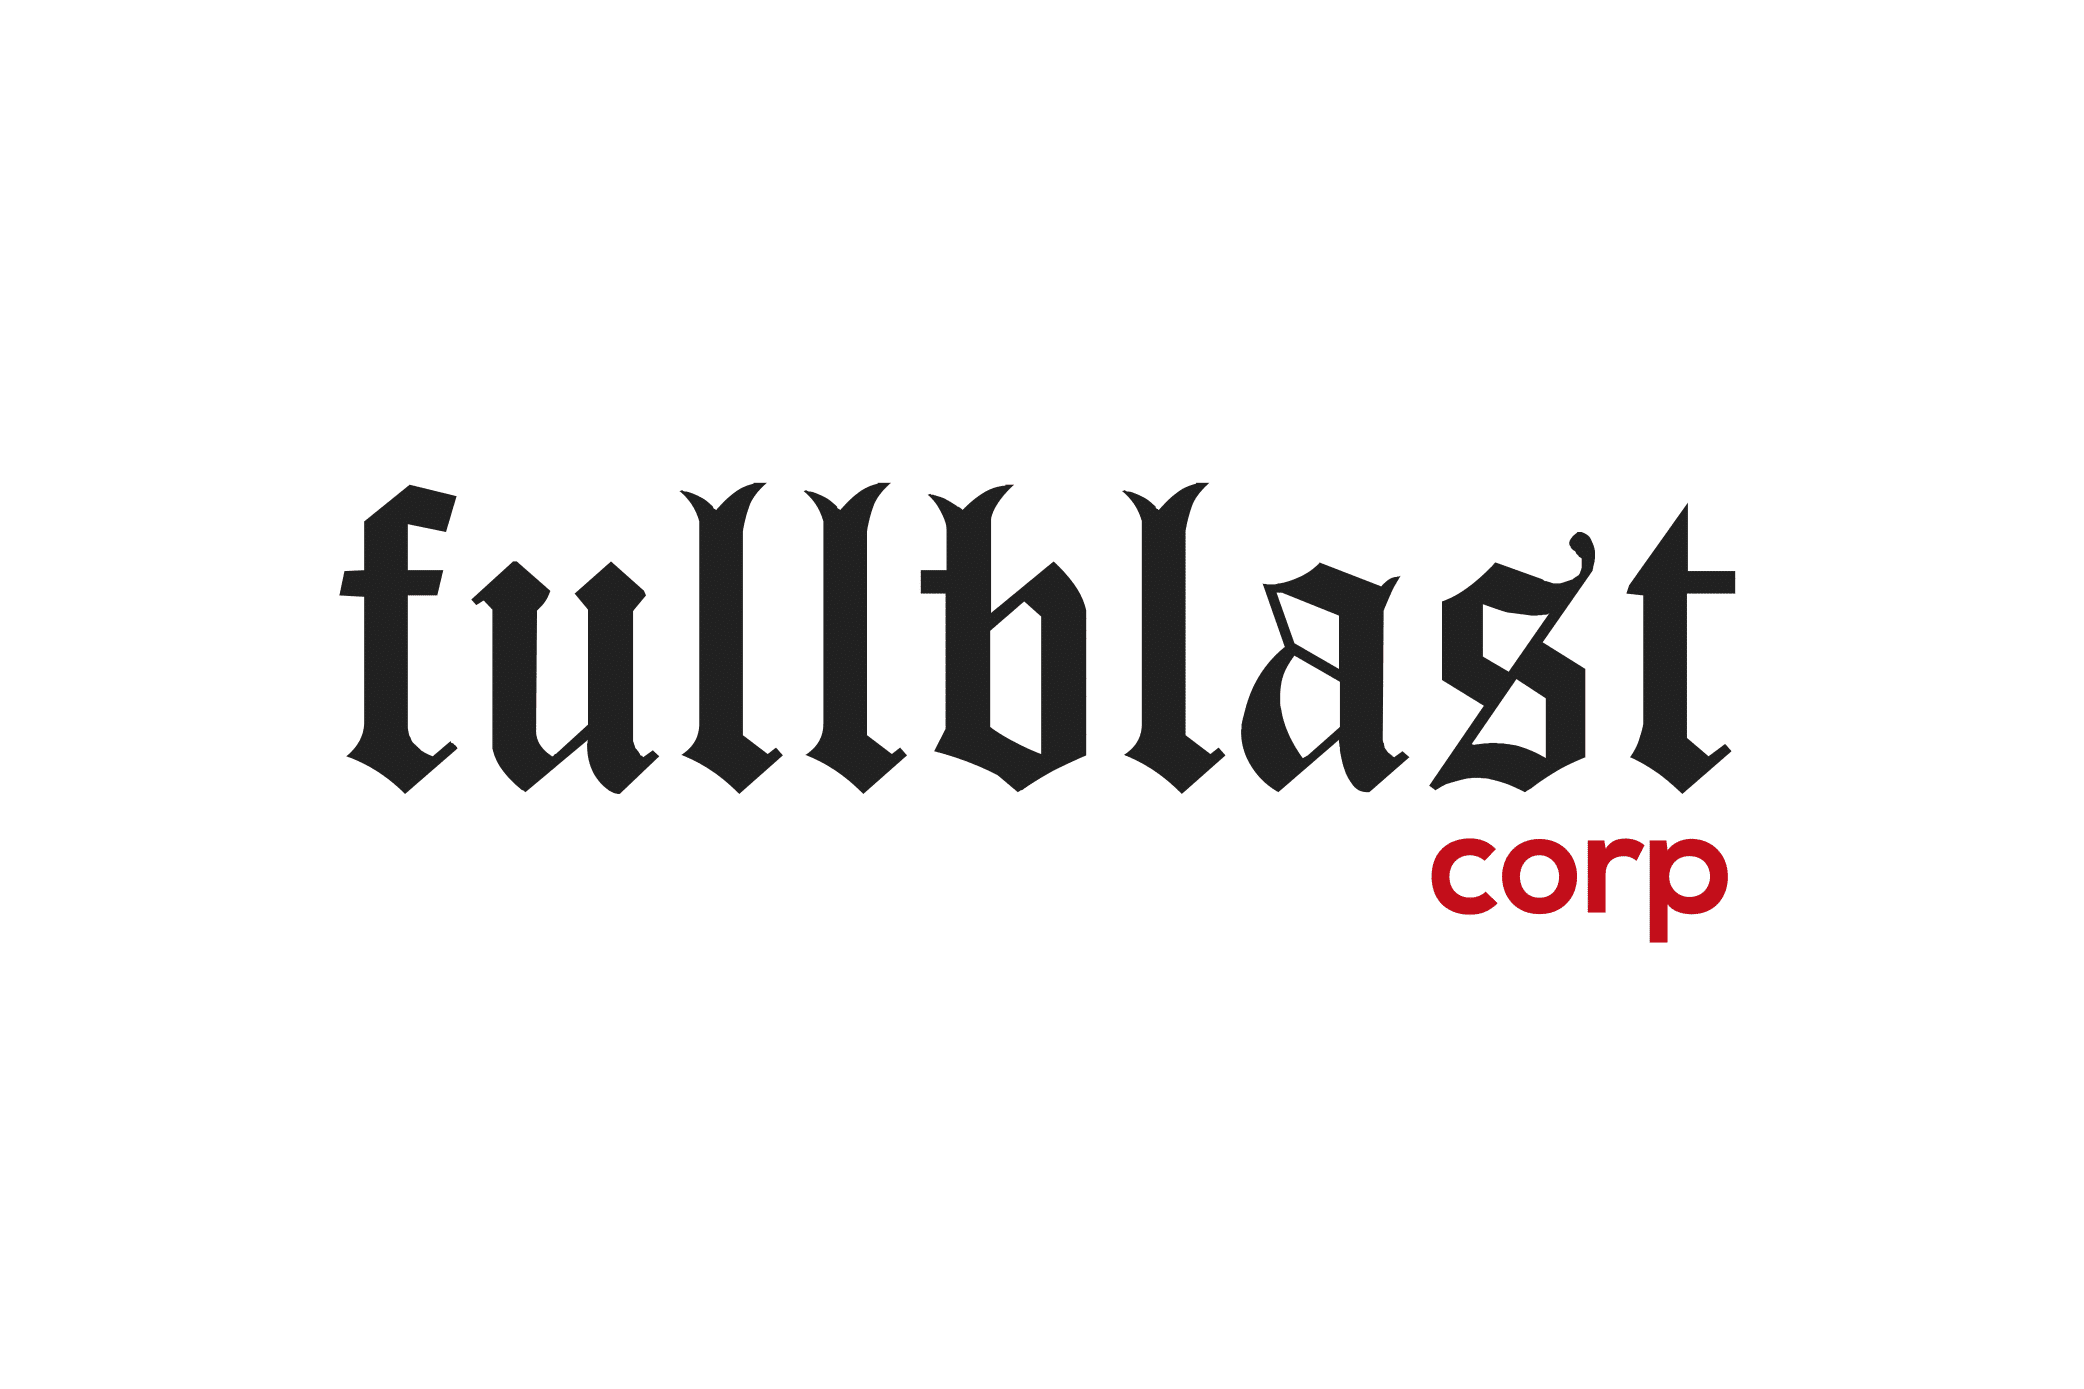 FullBlast Corp